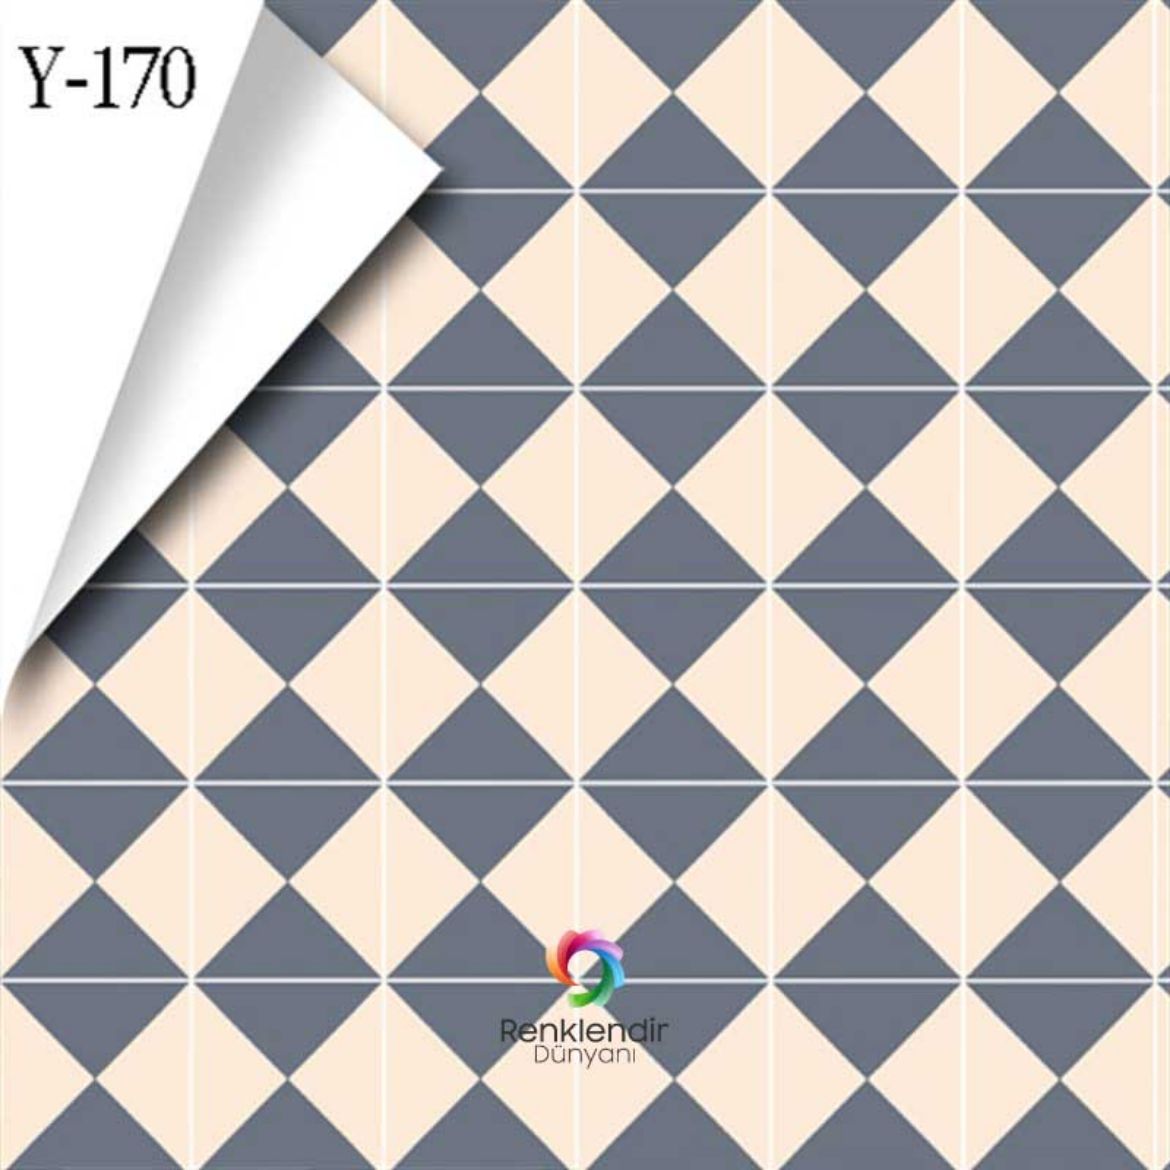 Geometrik Desenli Yer Kaplama Y-170 resmi